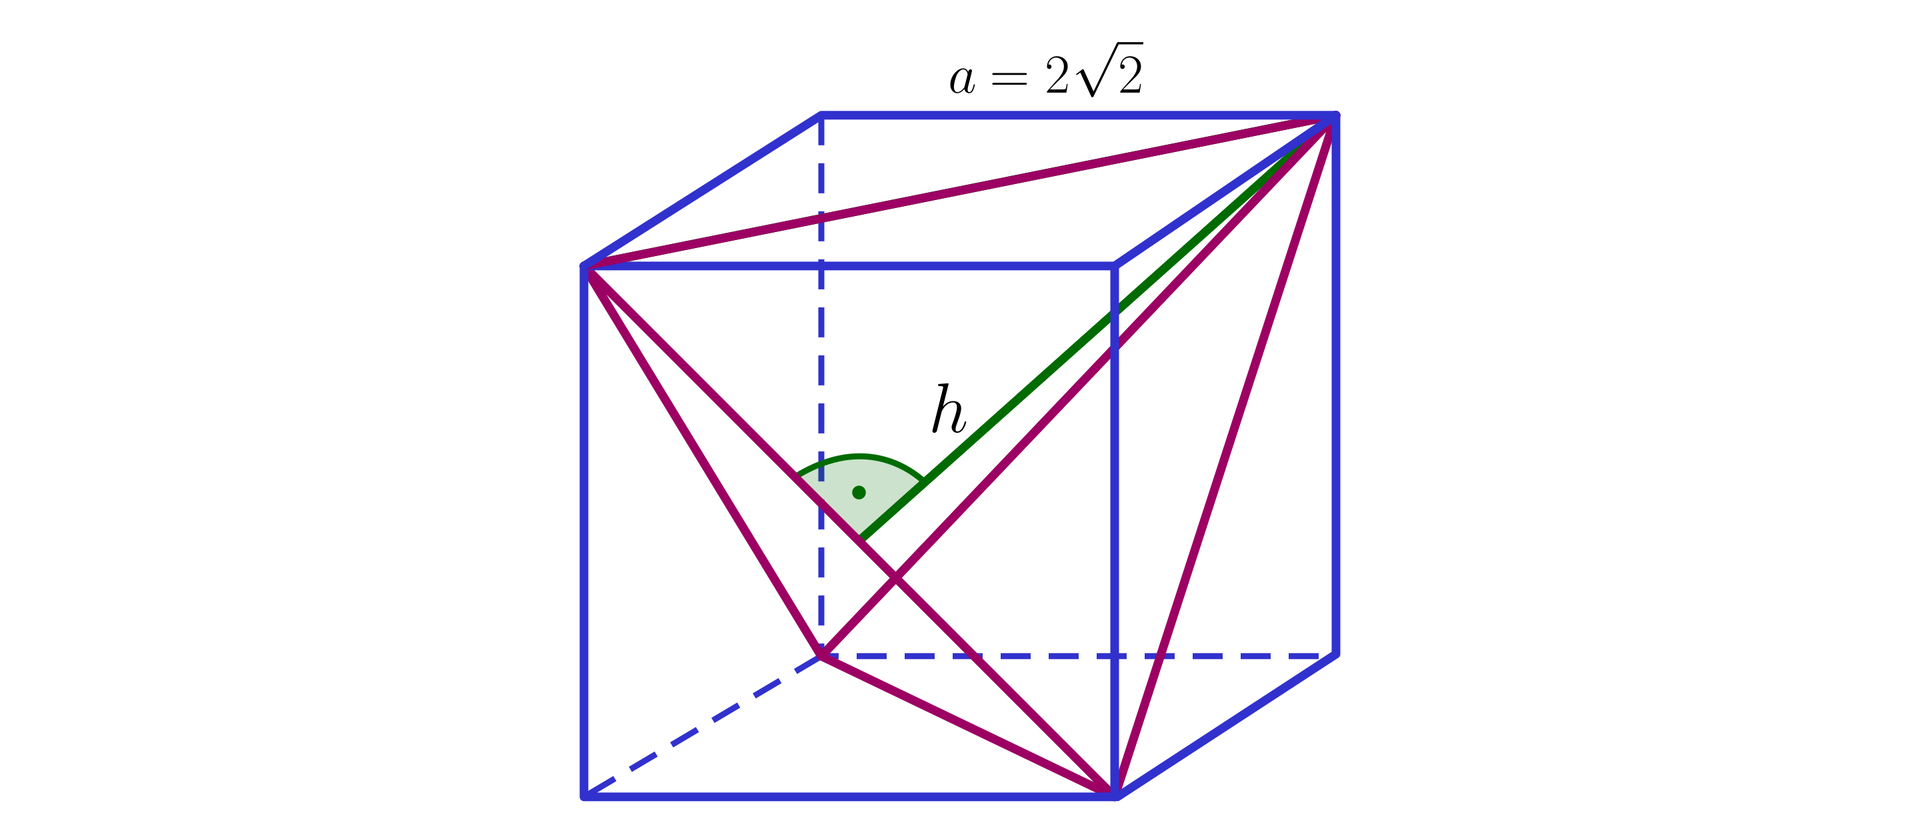 Ilustracja przedstawia sześcian, w który wpisano czworościan. Krawędź sześcianu ma długość 22, krawędzie czworościanu są przekątnymi ścian bocznych sześcianu. Wysokość czworościanu podpisano literą h.